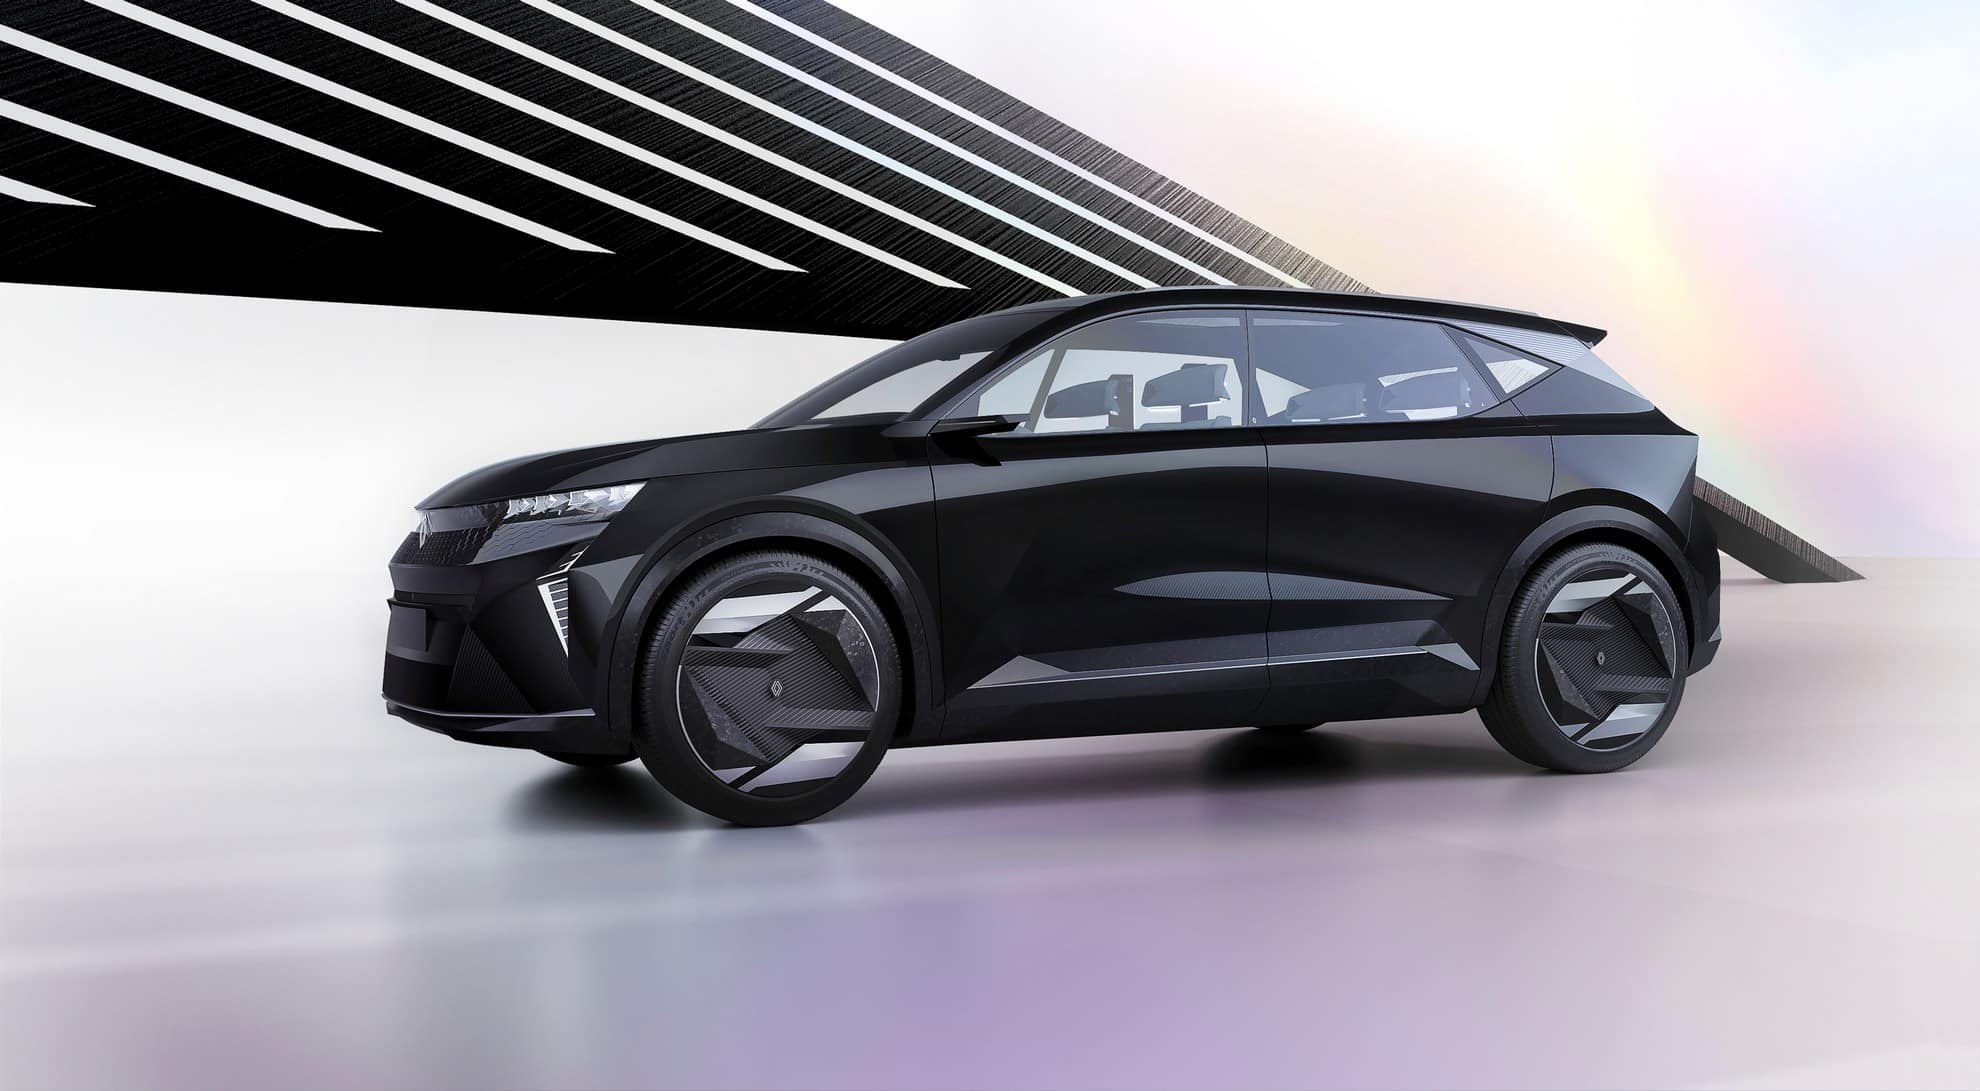 Renault Scenic Vision: la futuristica concept car ad idrogeno